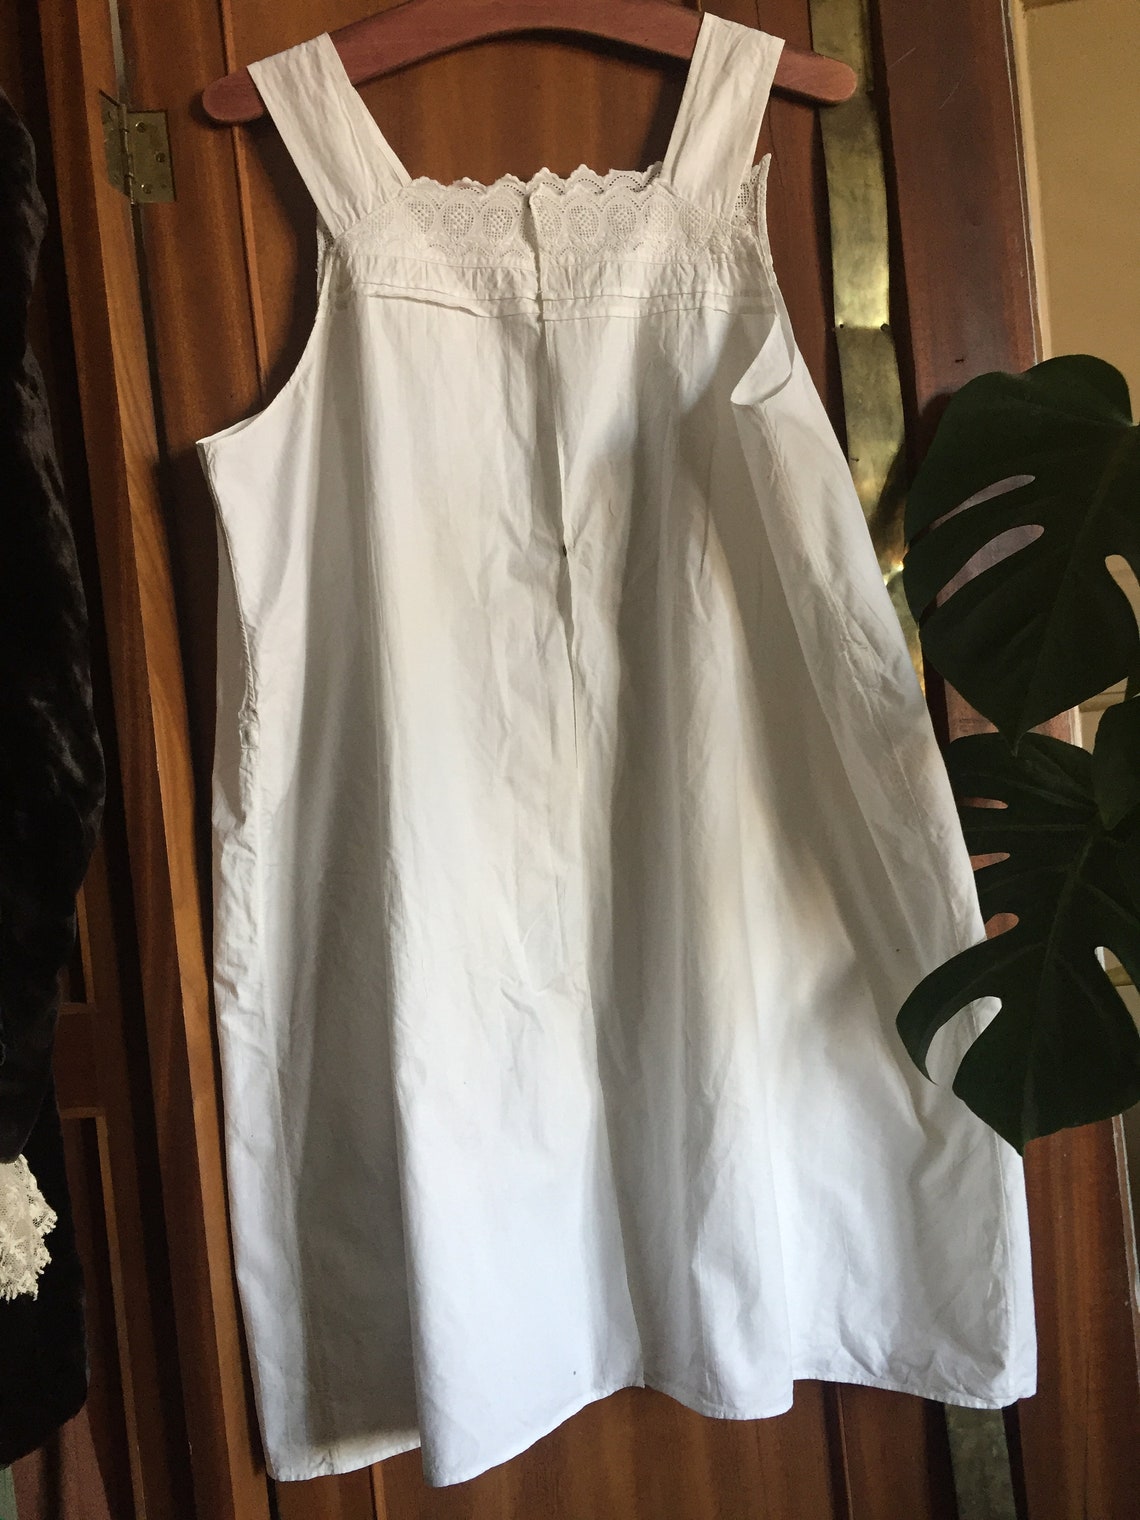 Antique apron 1900s white cotton lace apron with pocket | Etsy